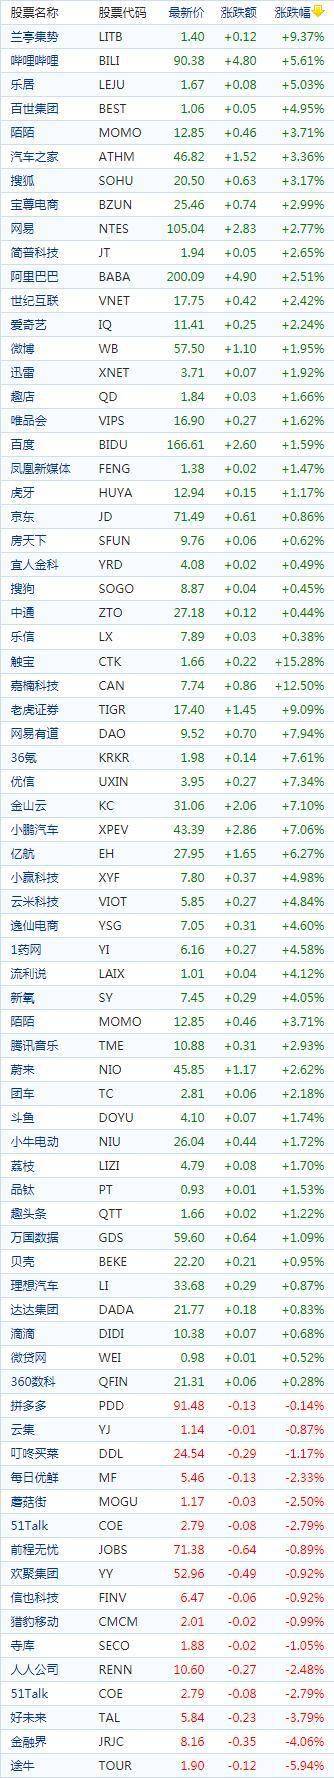 中国概念股周一收盘普遍上涨 阿里巴巴(美股BABA)上涨2.51%